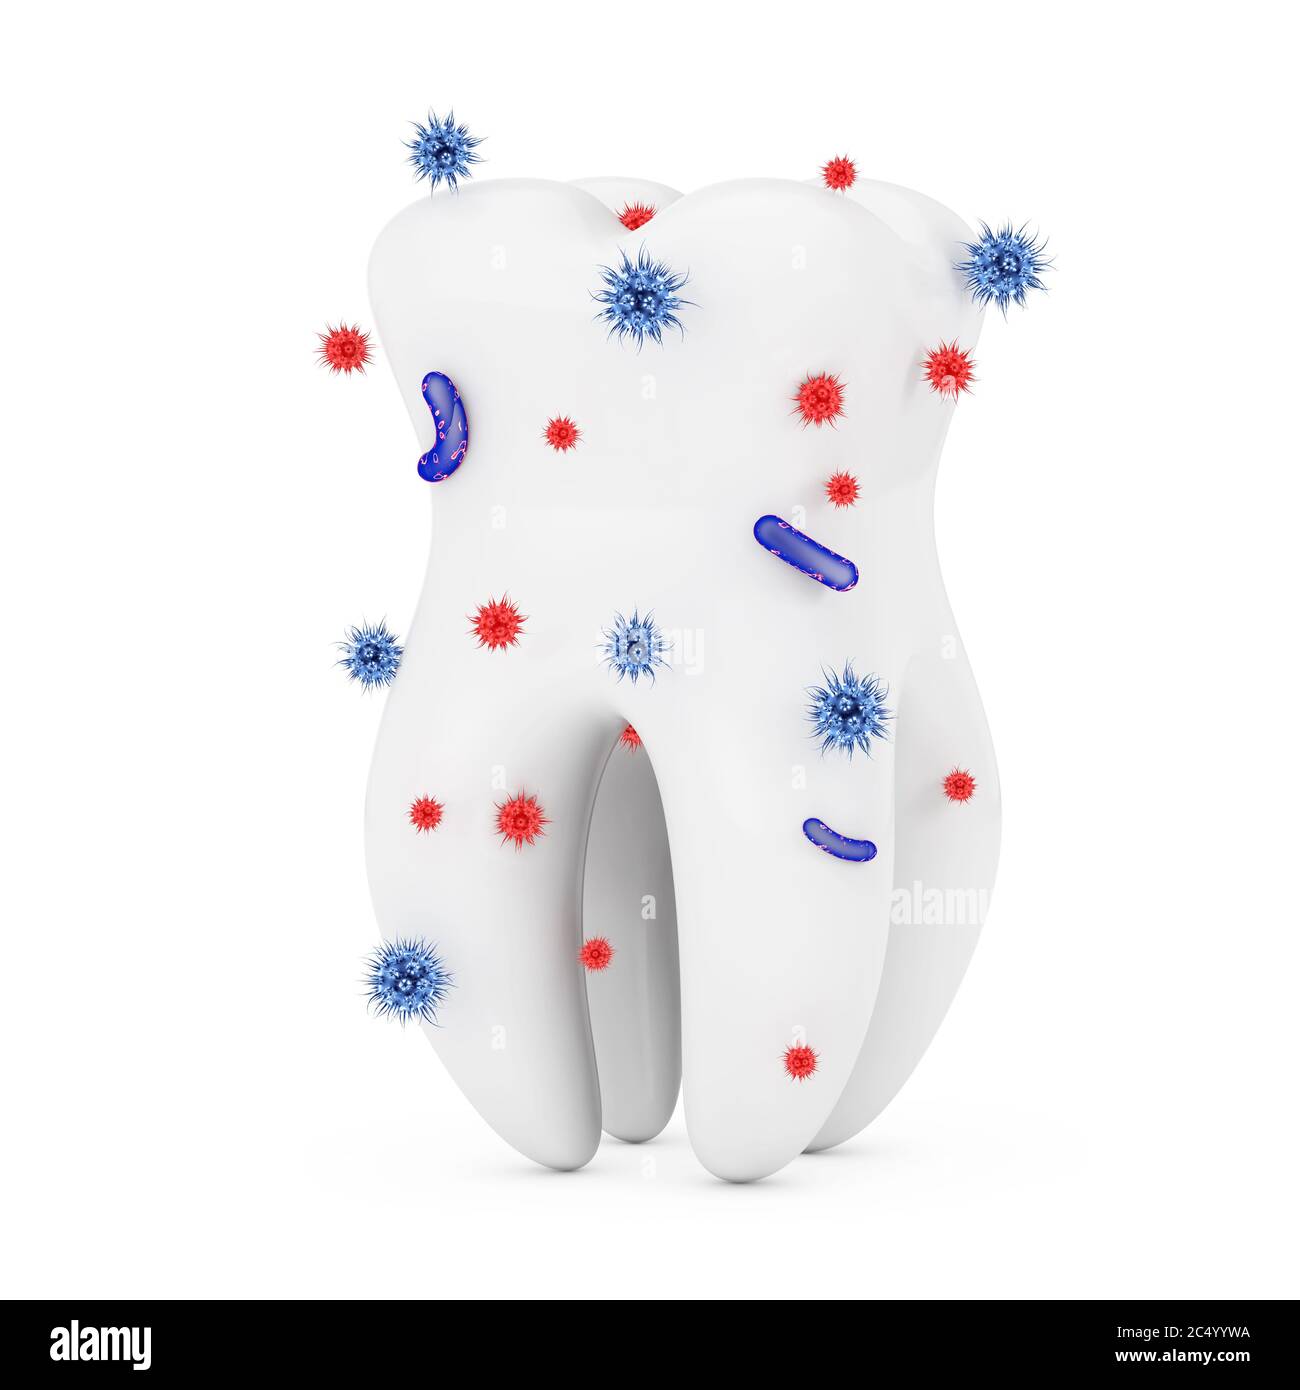 Concept d'hygiène dentaire. Bactéries et virus autour de la dent humaine sur fond blanc. Rendu 3d. Banque D'Images